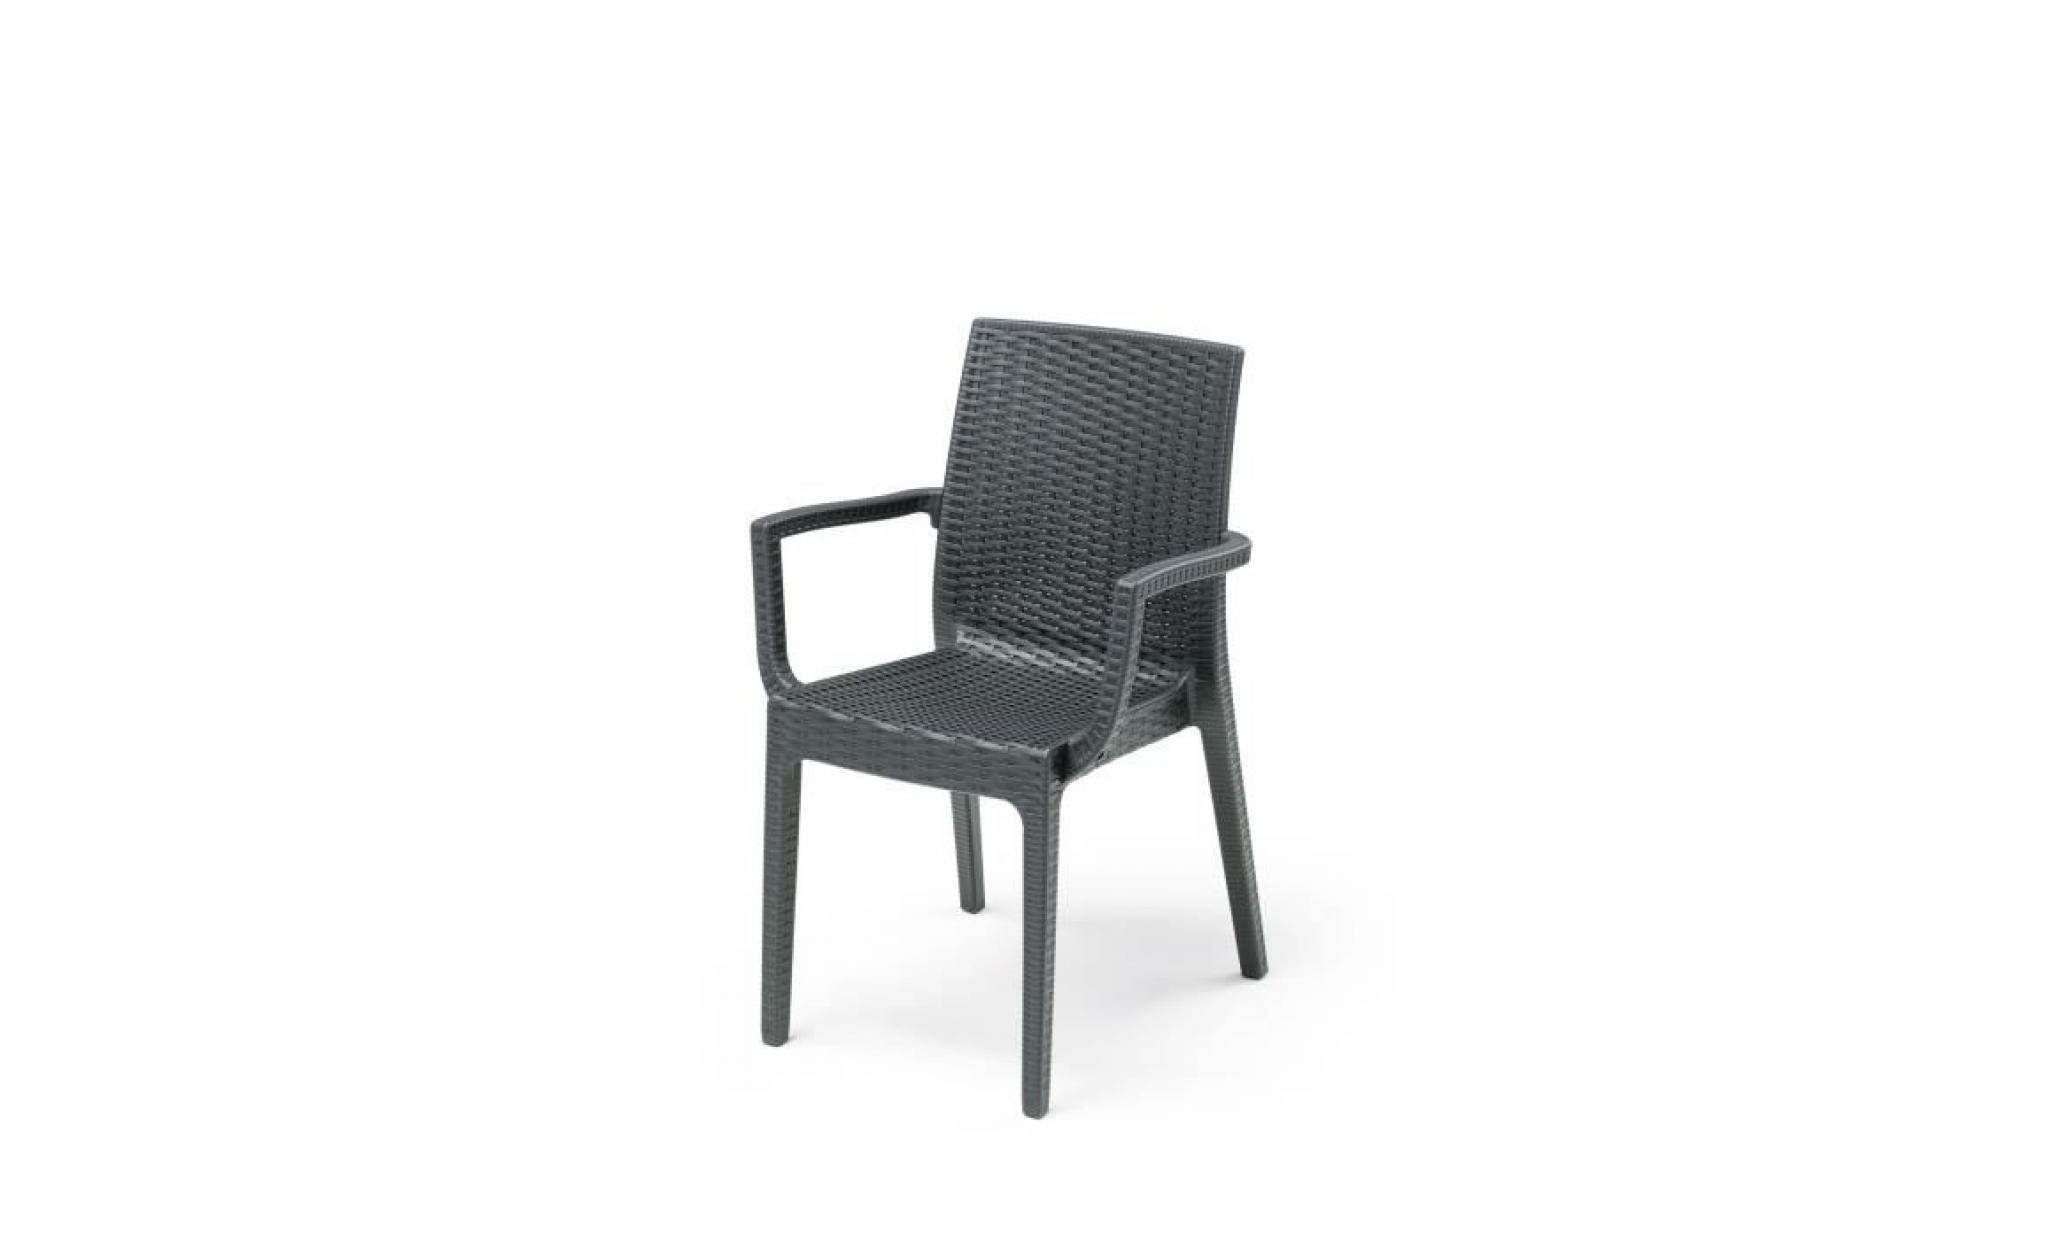 lot de 2 fauteuils de jardin dafné   aspect résine tressée   55 x 54 x 85 cm   gris anthracite